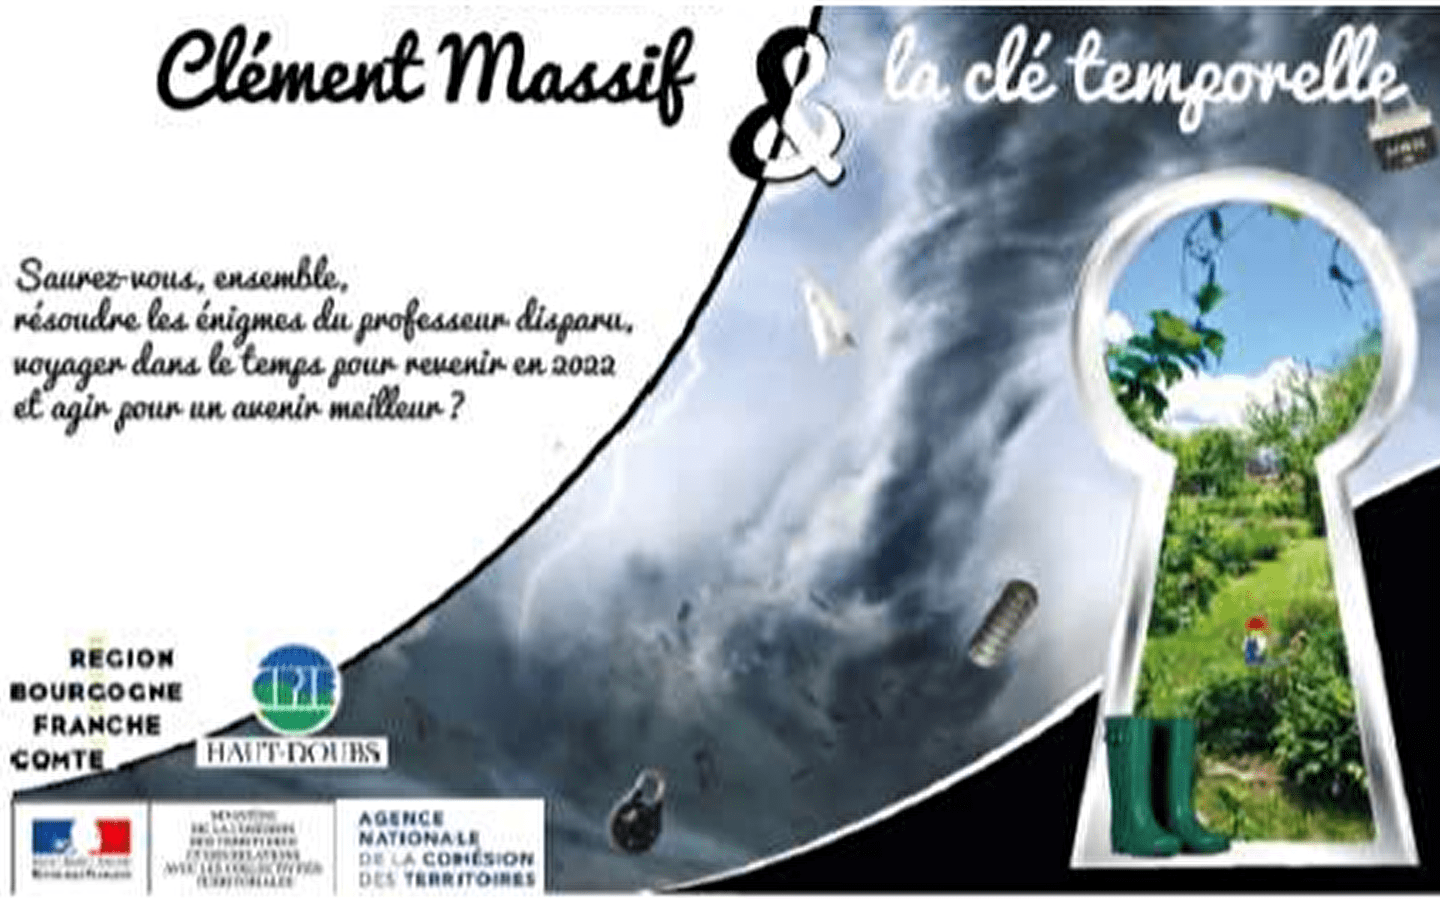 Escape game: Clément Massif & la clé temporelle